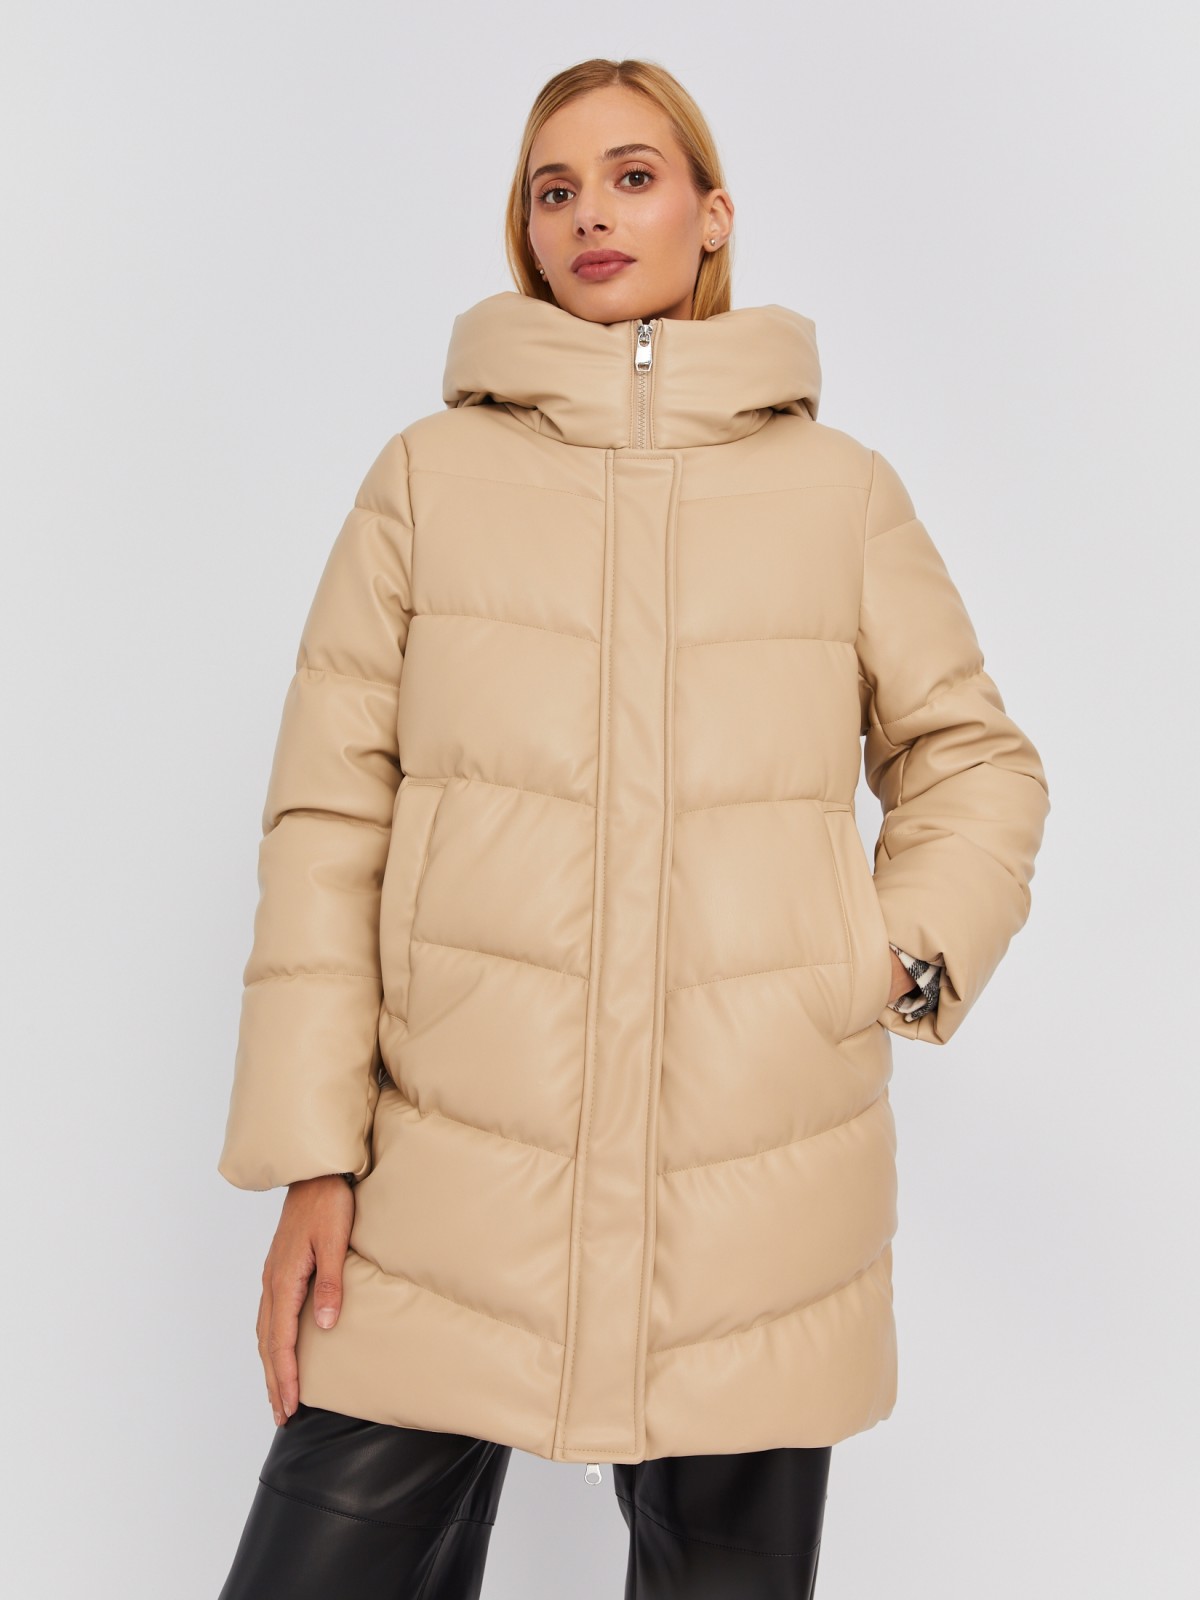 Тёплая стёганая куртка-пальто из экокожи с капюшоном